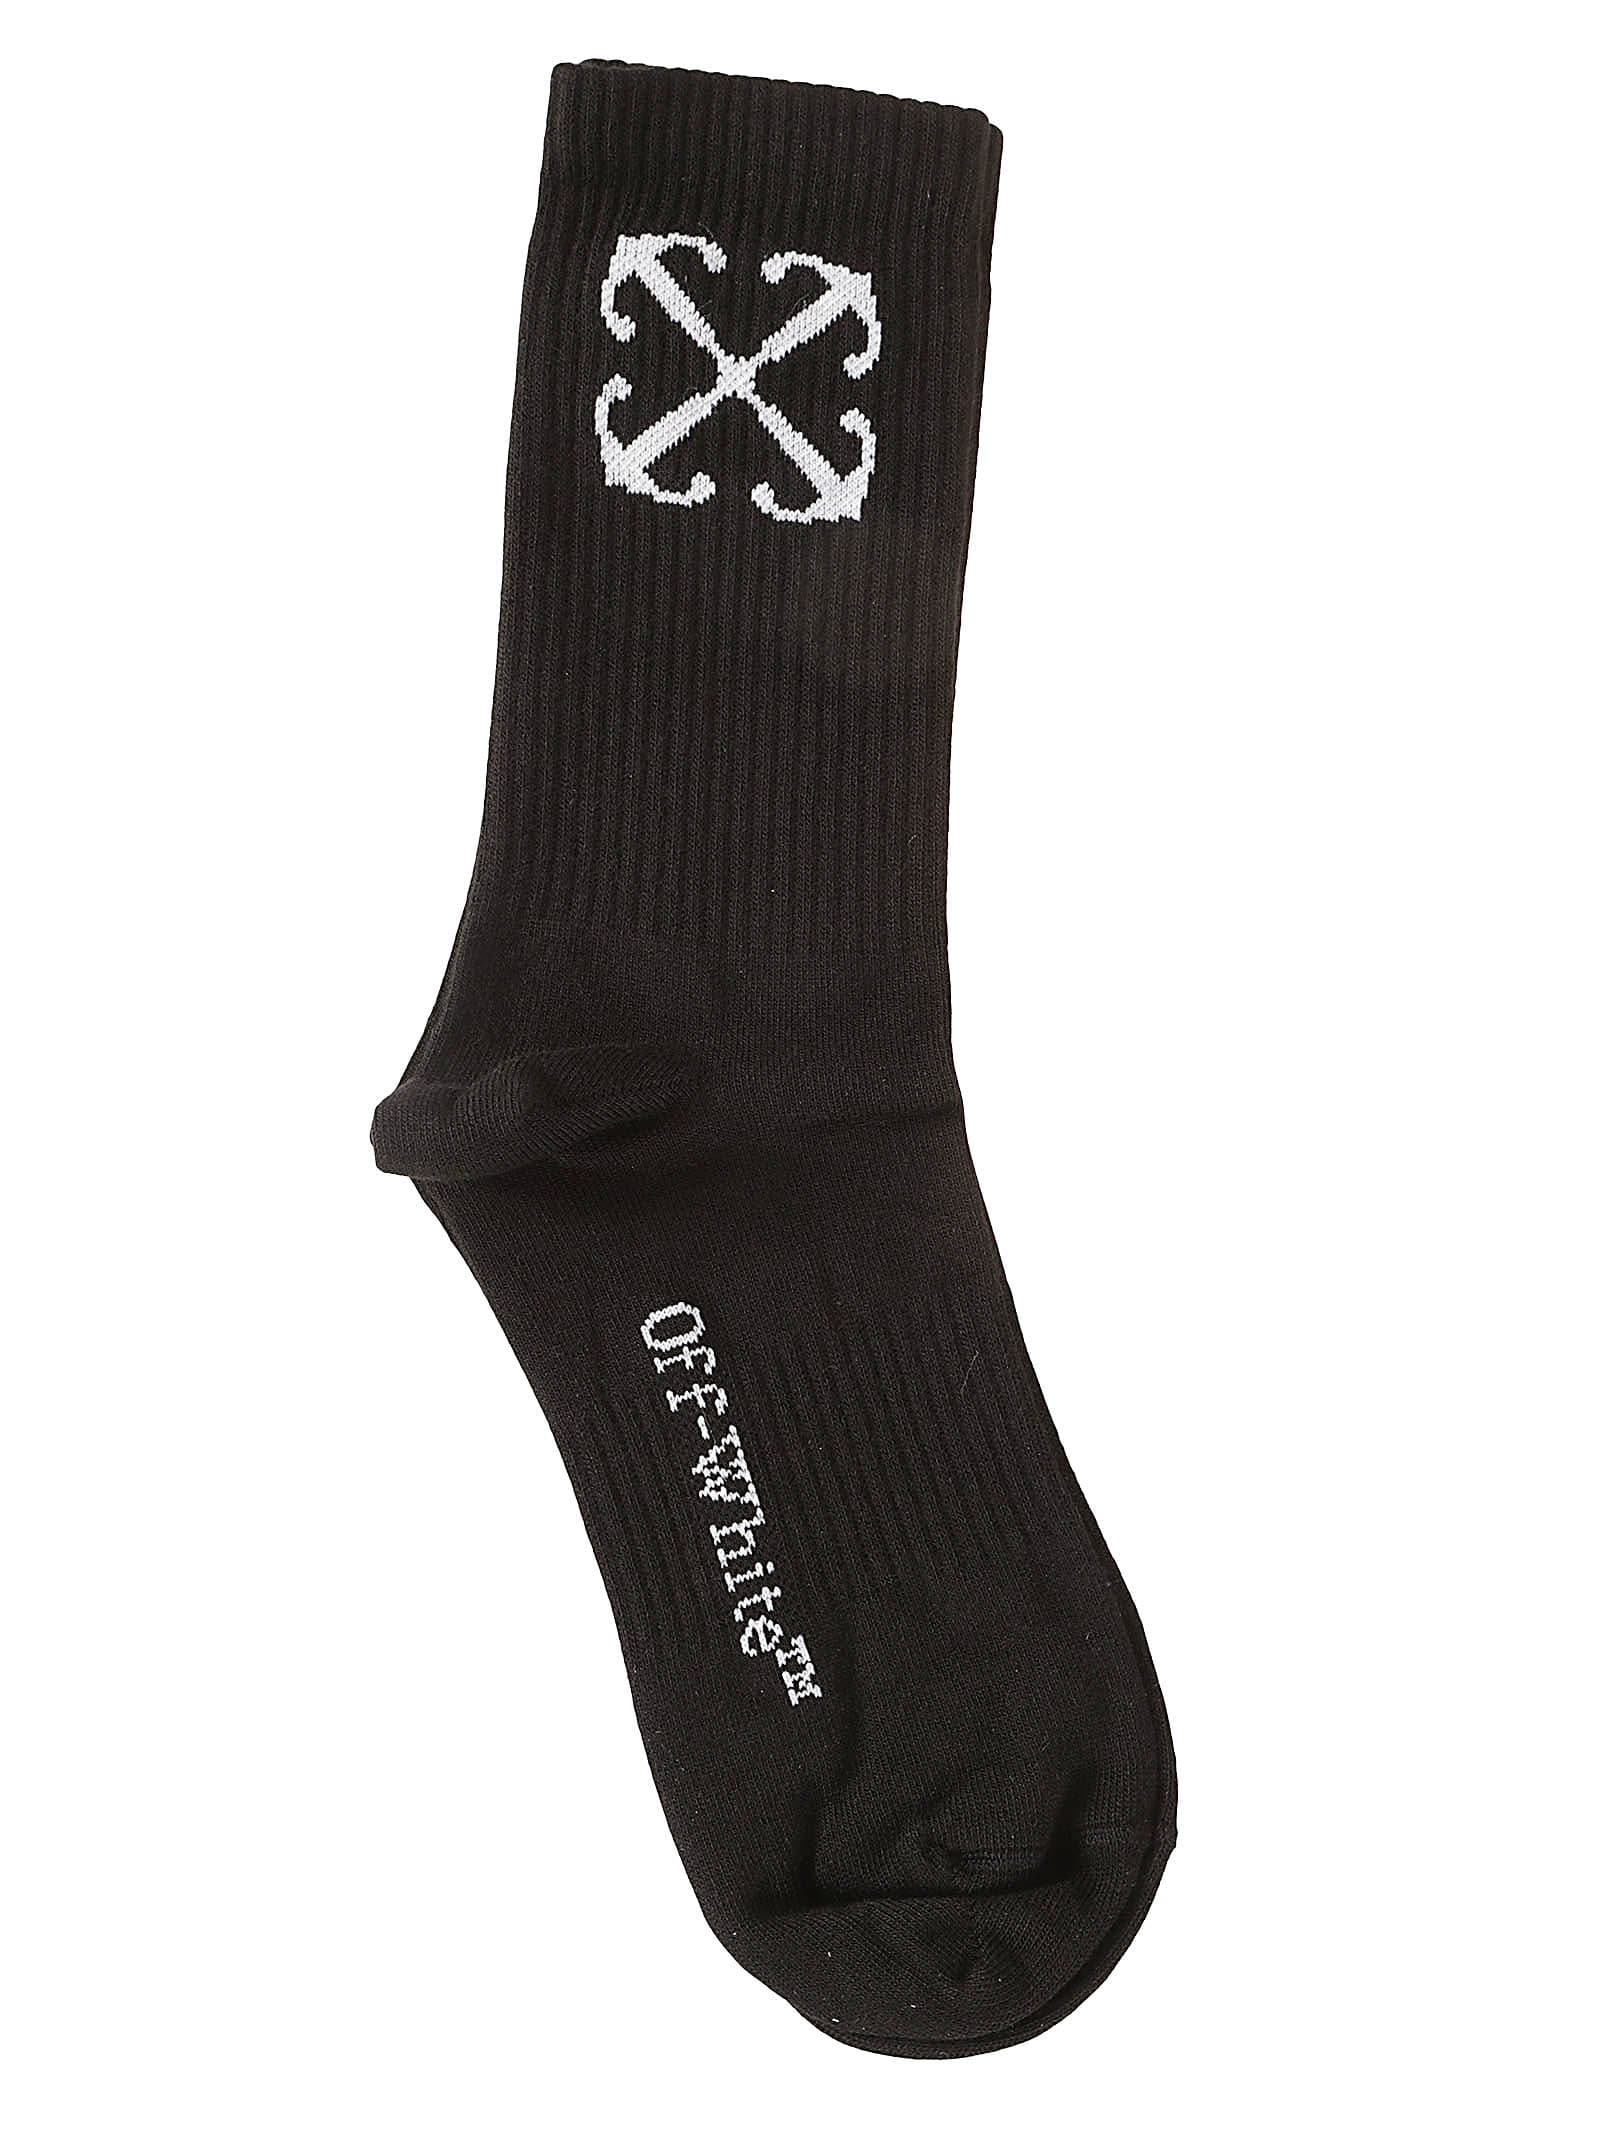 Off-white Arrow Mid Calf Socks In Black/white